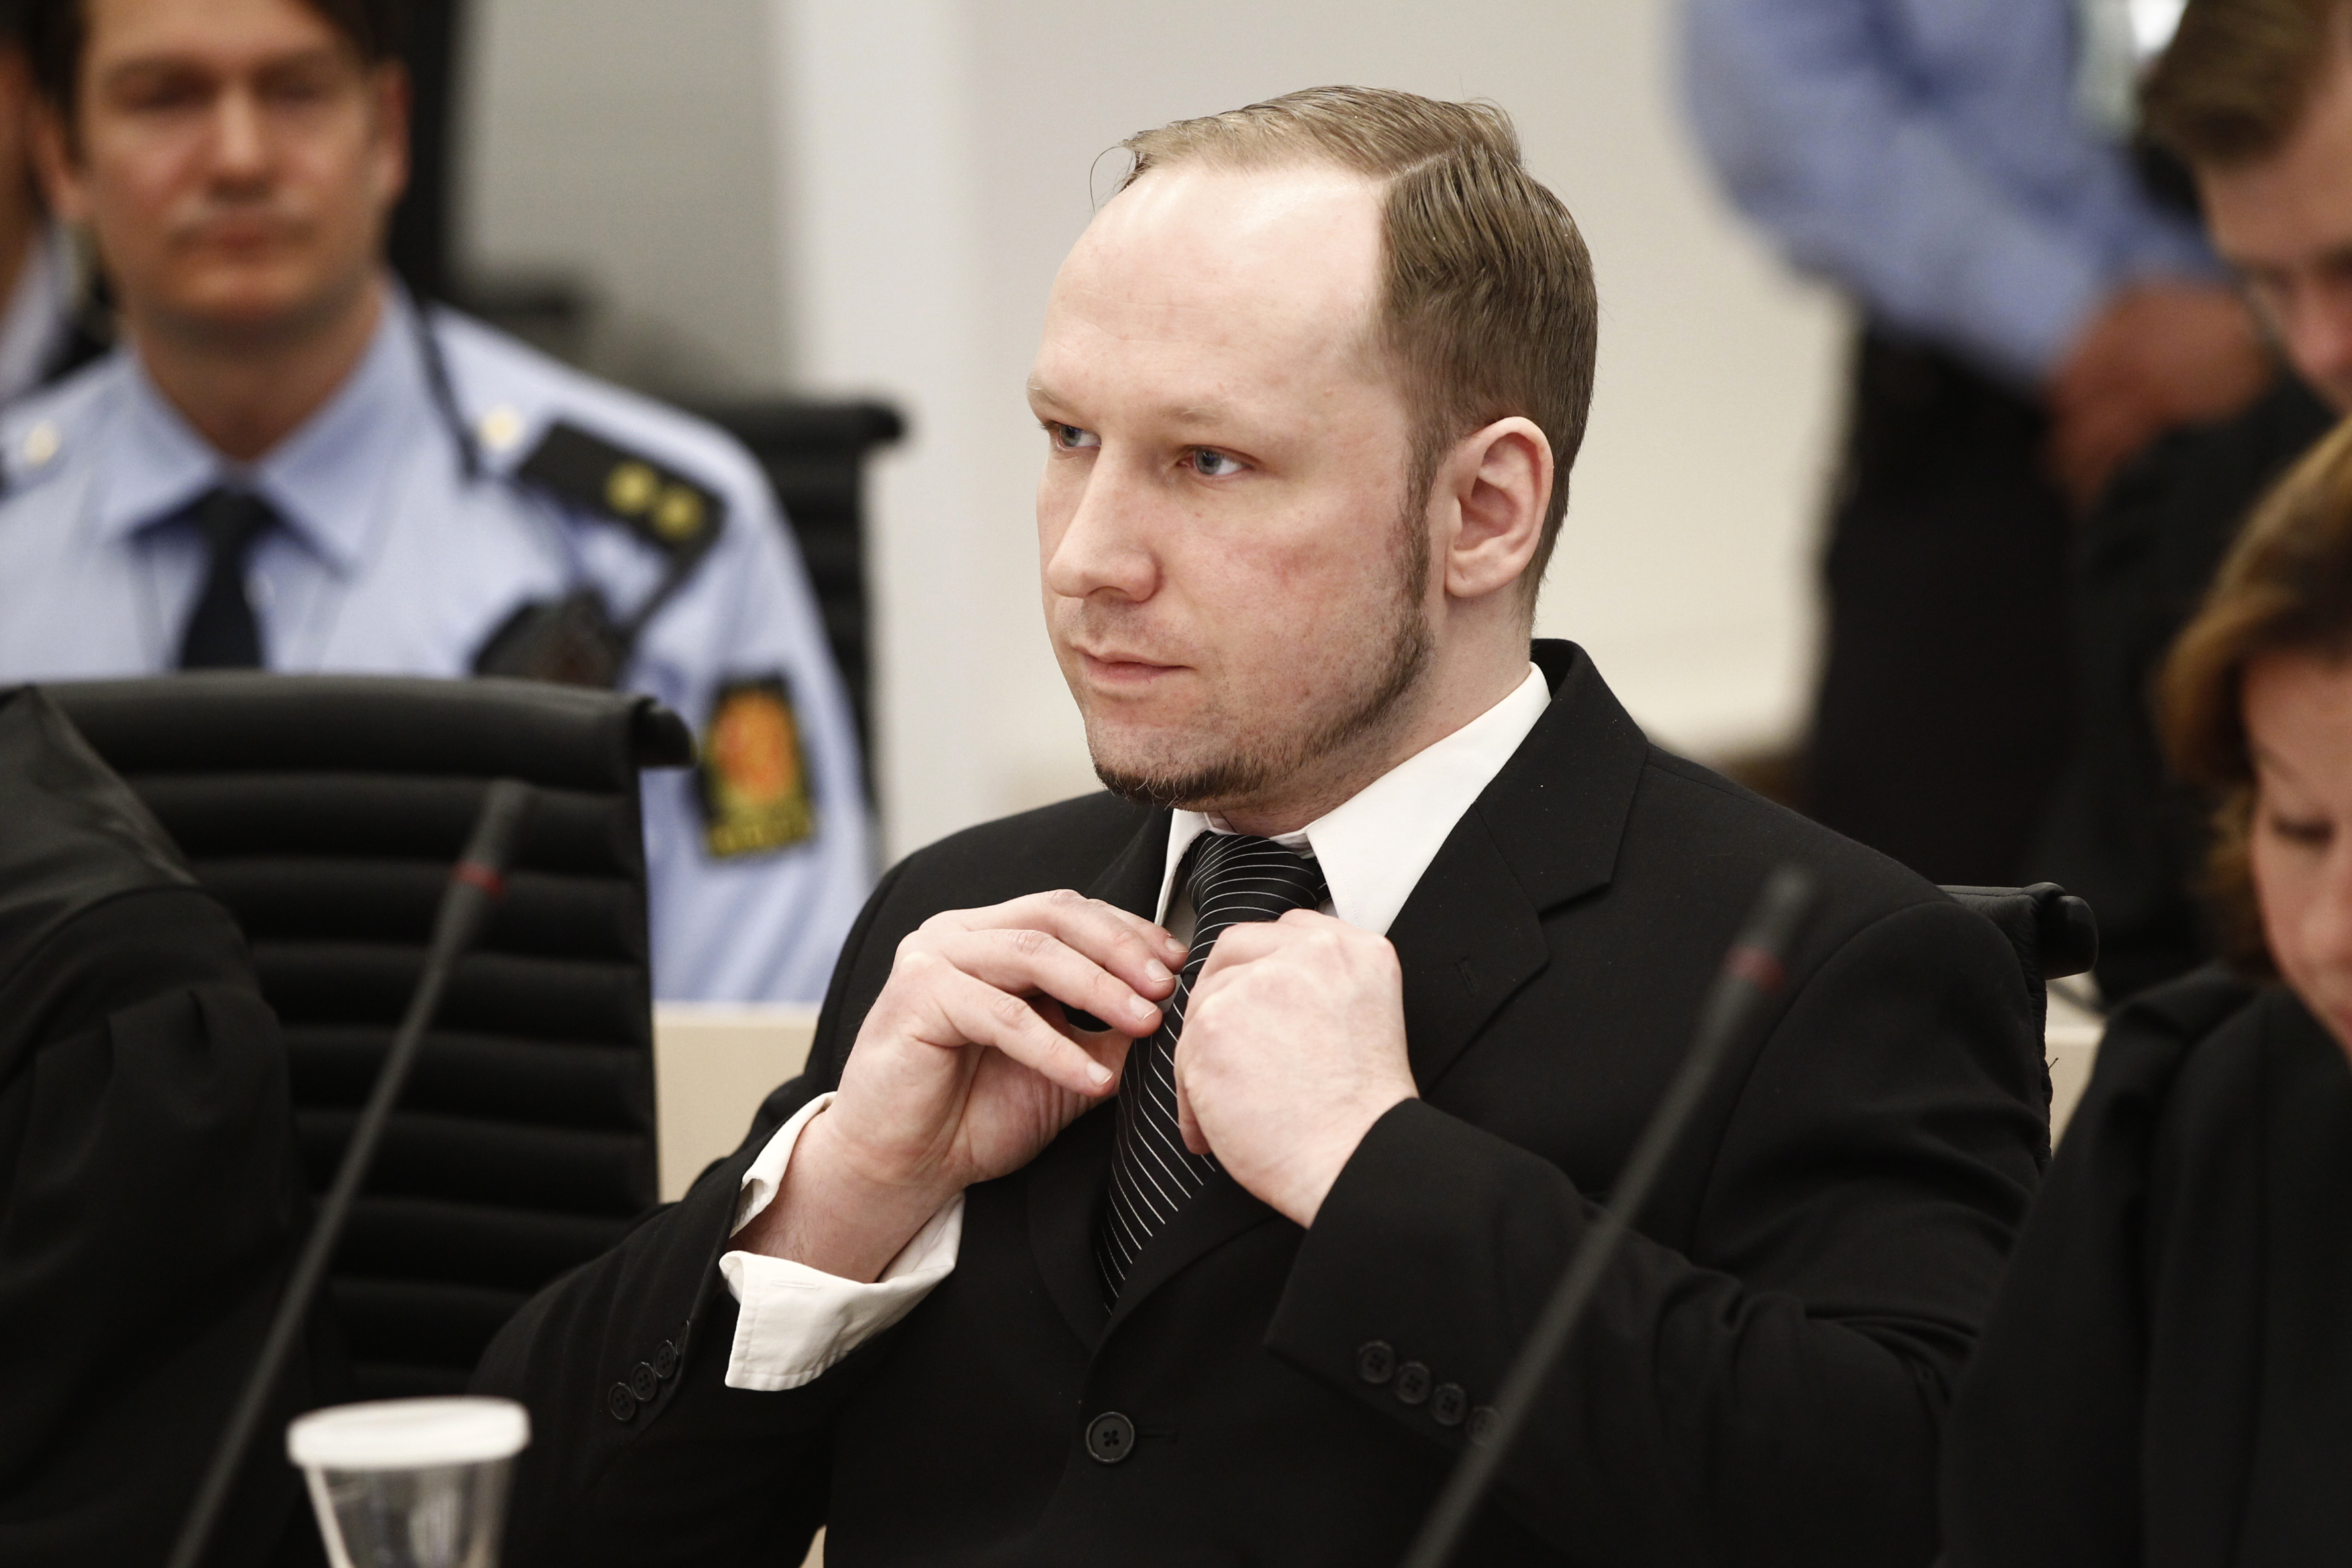 Bomb, Rättegång, Oslo, Terrordåd, Norge, Bombattentat, Skottlossning, Anders Behring Breivik, Utøya, Brott och straff, Attack